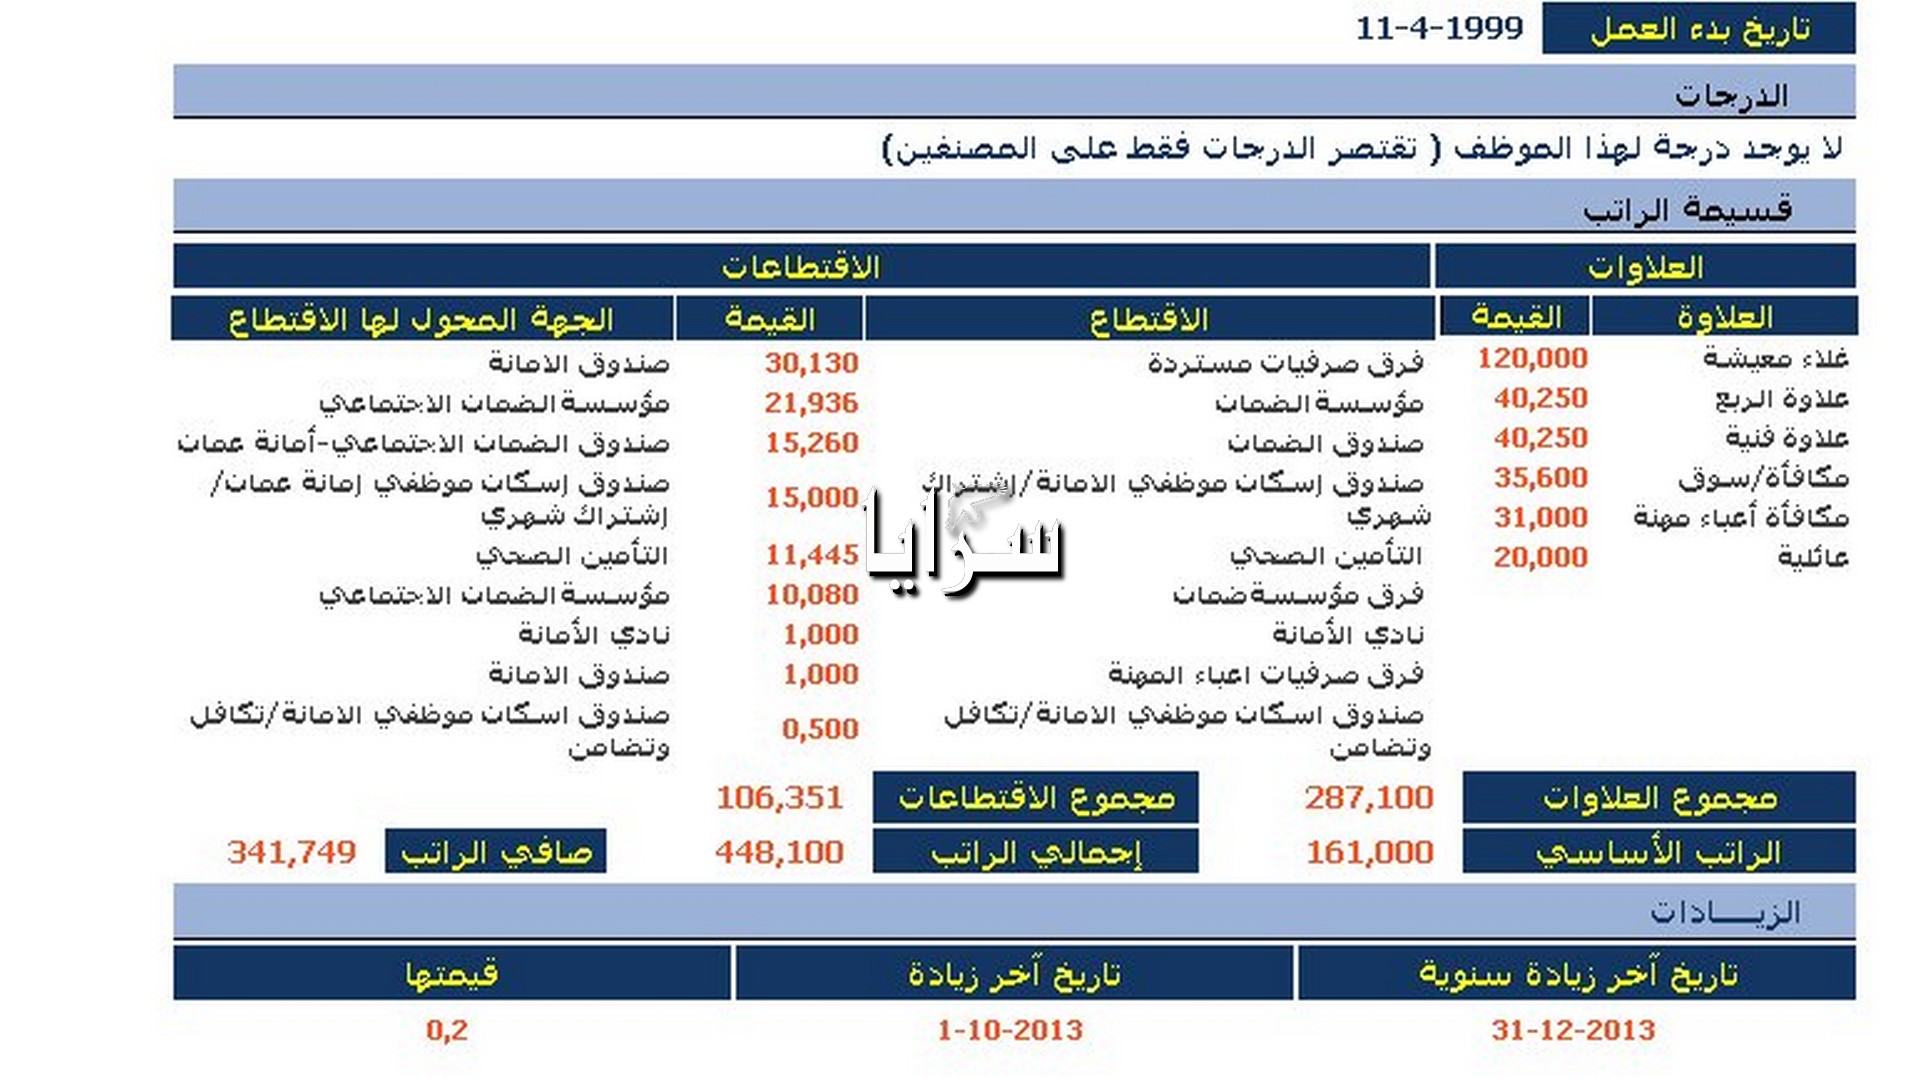 أمانة عمان تقتطع نحو ربع راتب موظف تحت مسميات غامضة ( وثيقة )